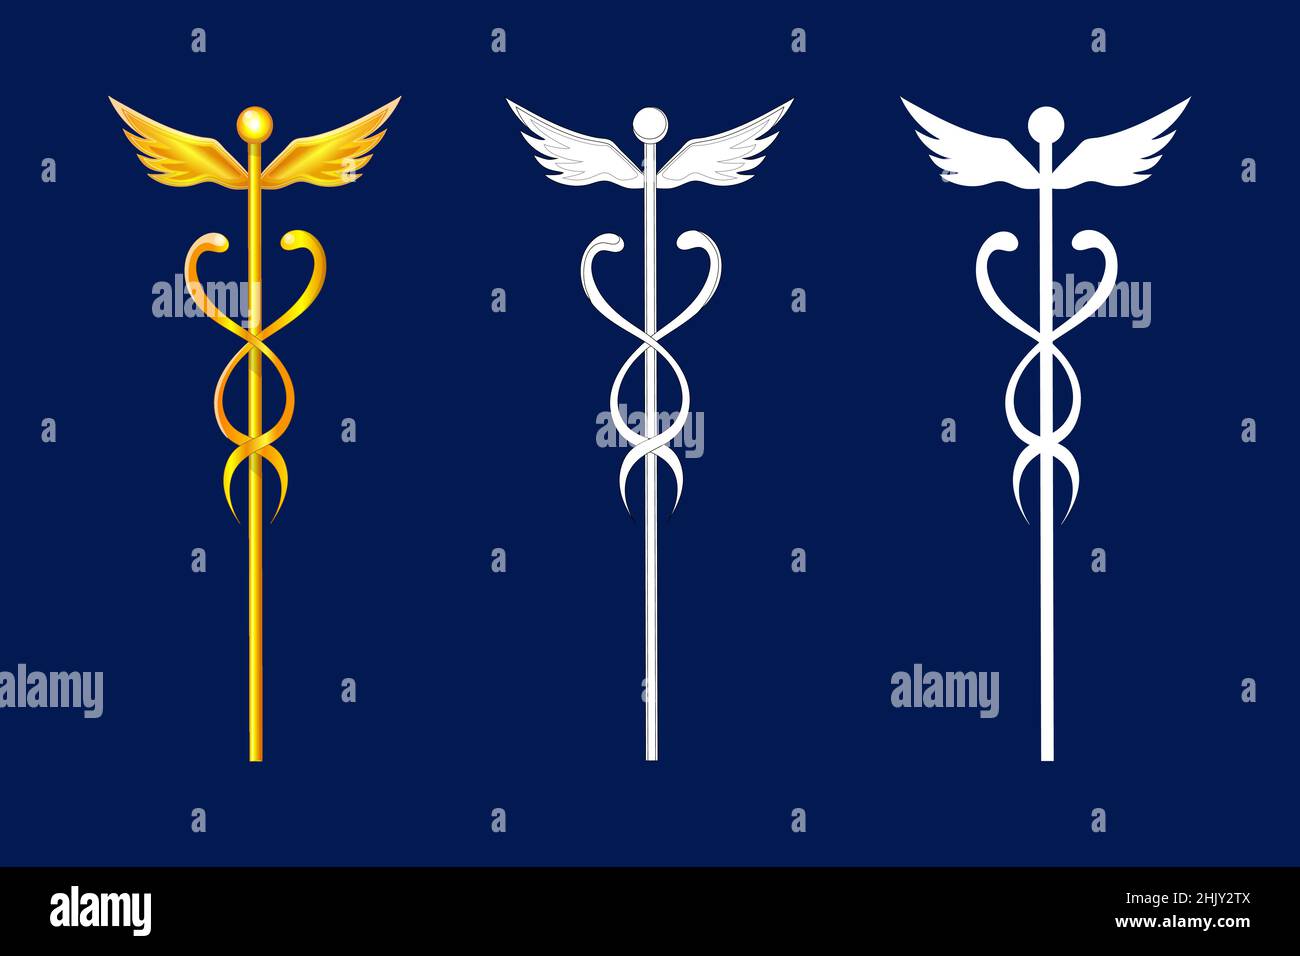 Caduceus, geflügelter Zauberstab mit Schlangen, von Hermes, Merkur, griechischem oder römischem handelsgott. Handelssymbol Stock Vektor